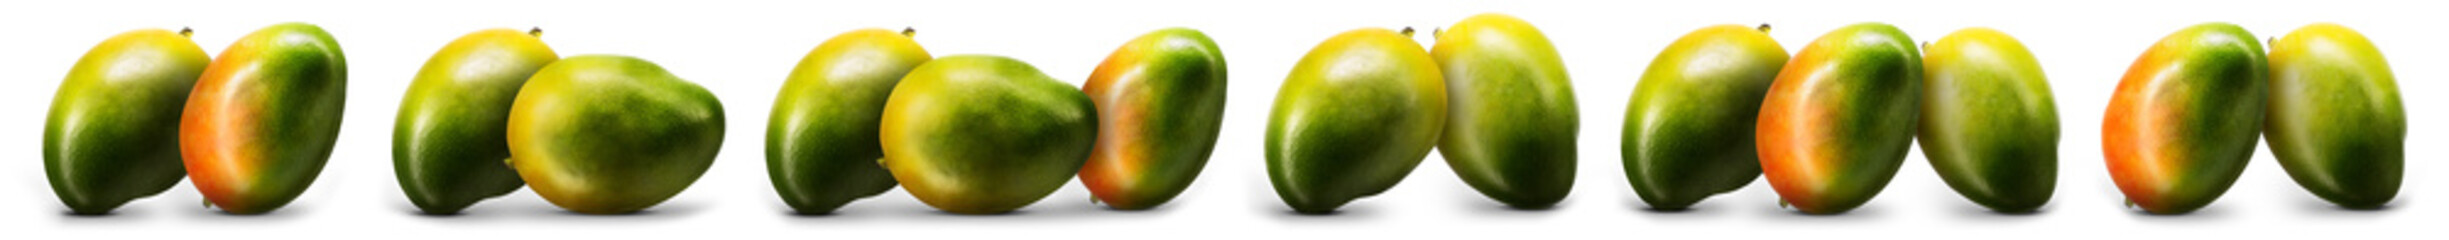 Group of mango fruit isolated on white background